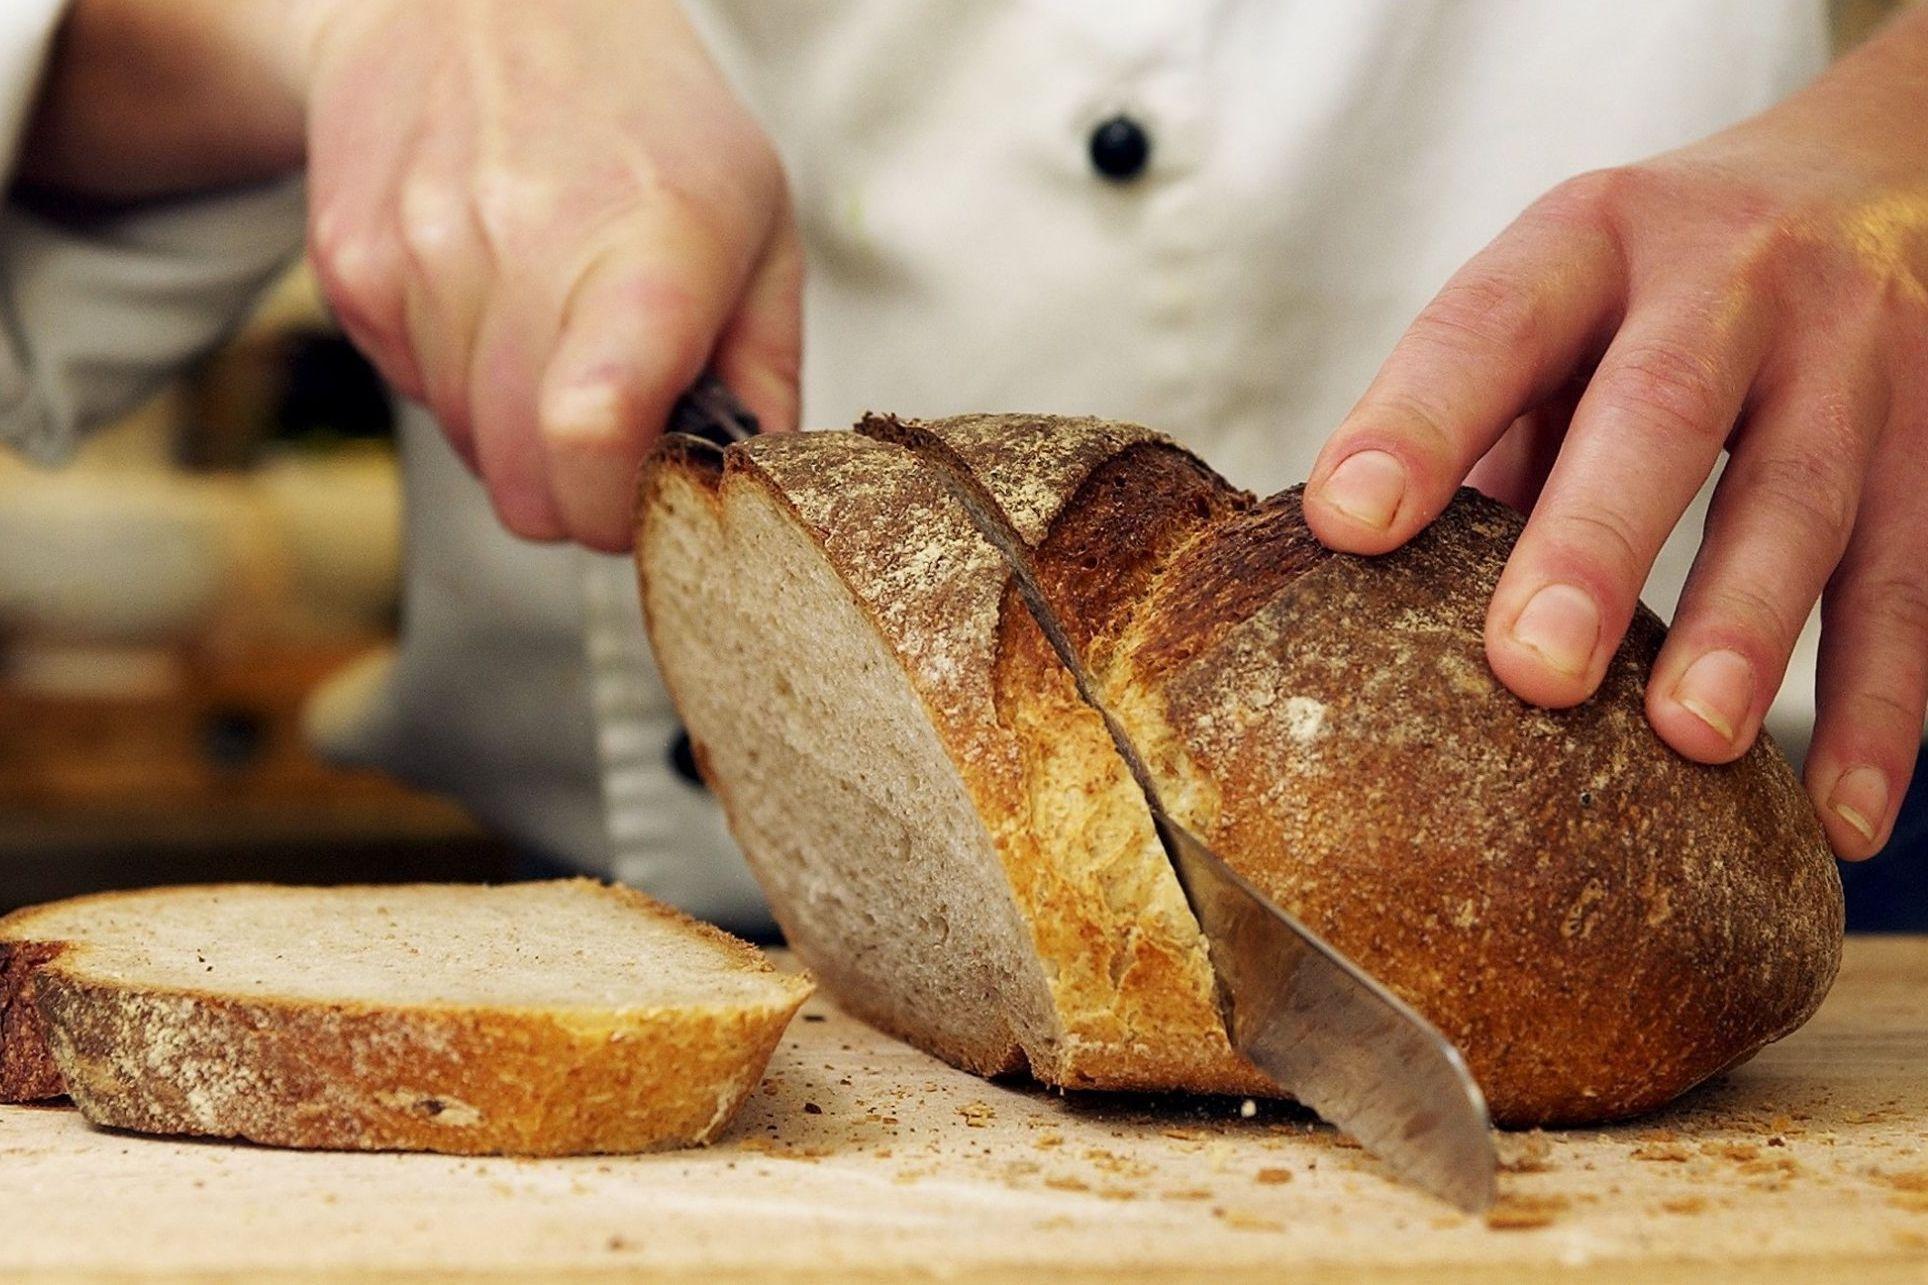 GOD BRØDKNIV: Aateigen mener det er viktig med en god brødkniv på studenkjøkkenet. Foto: Espen Sjølingstad Hoen/VG